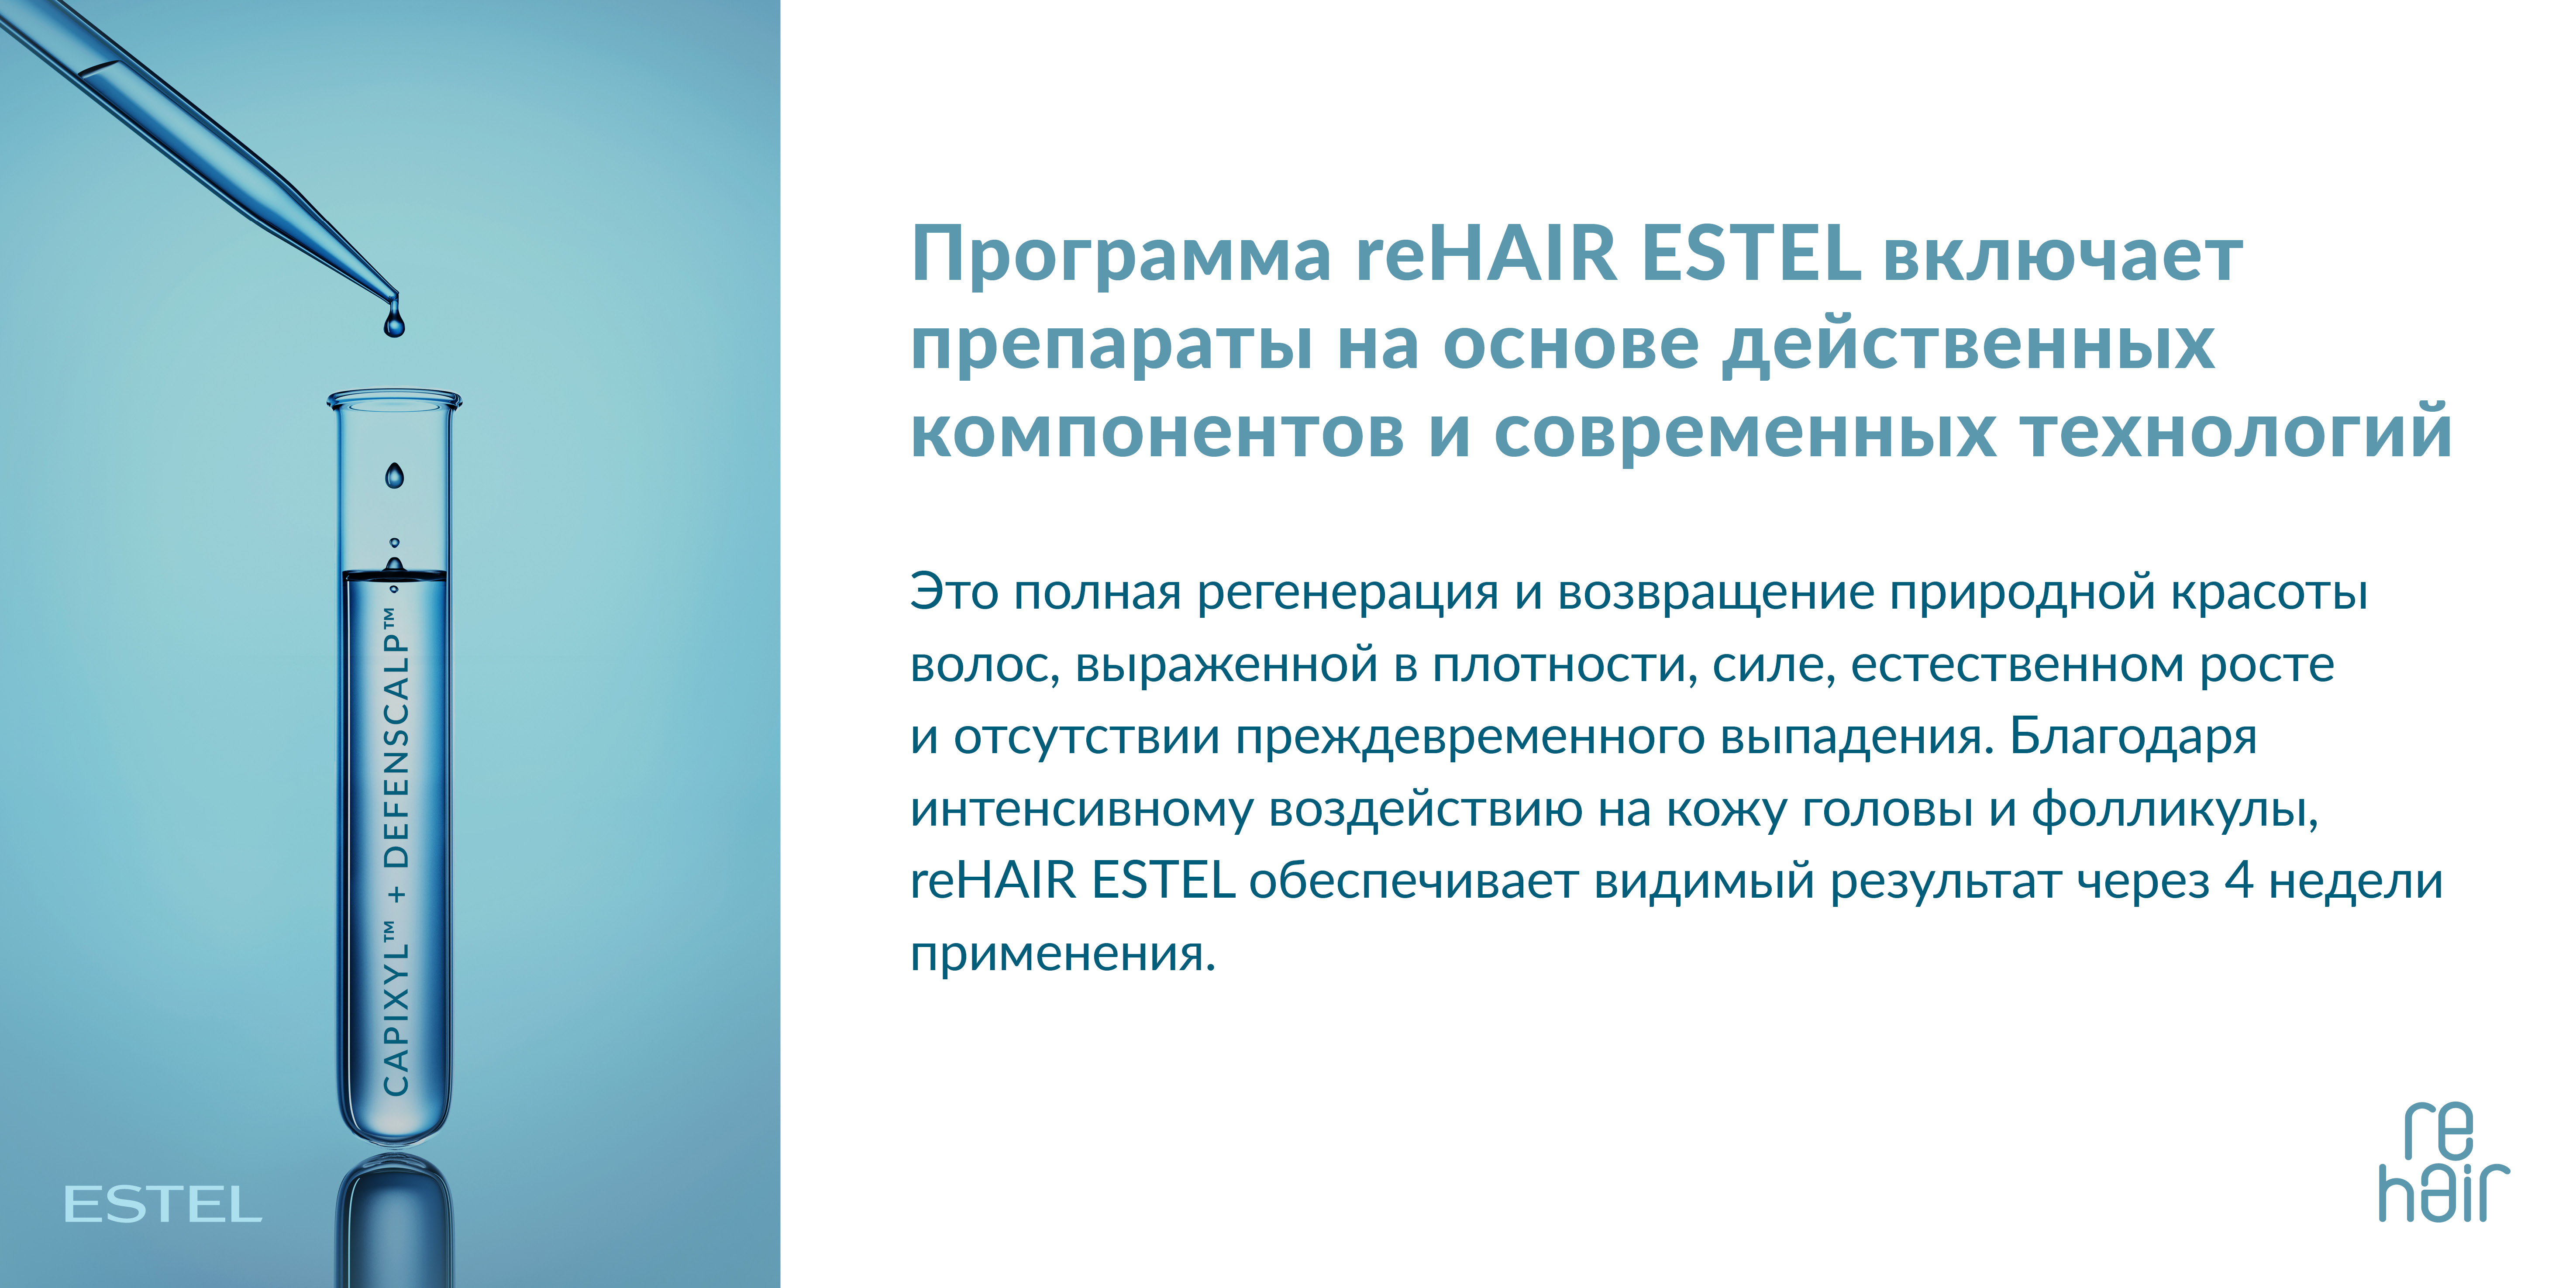 ESTEL reHair Шампунь-prebiotic против выпадения волос 250 мл.